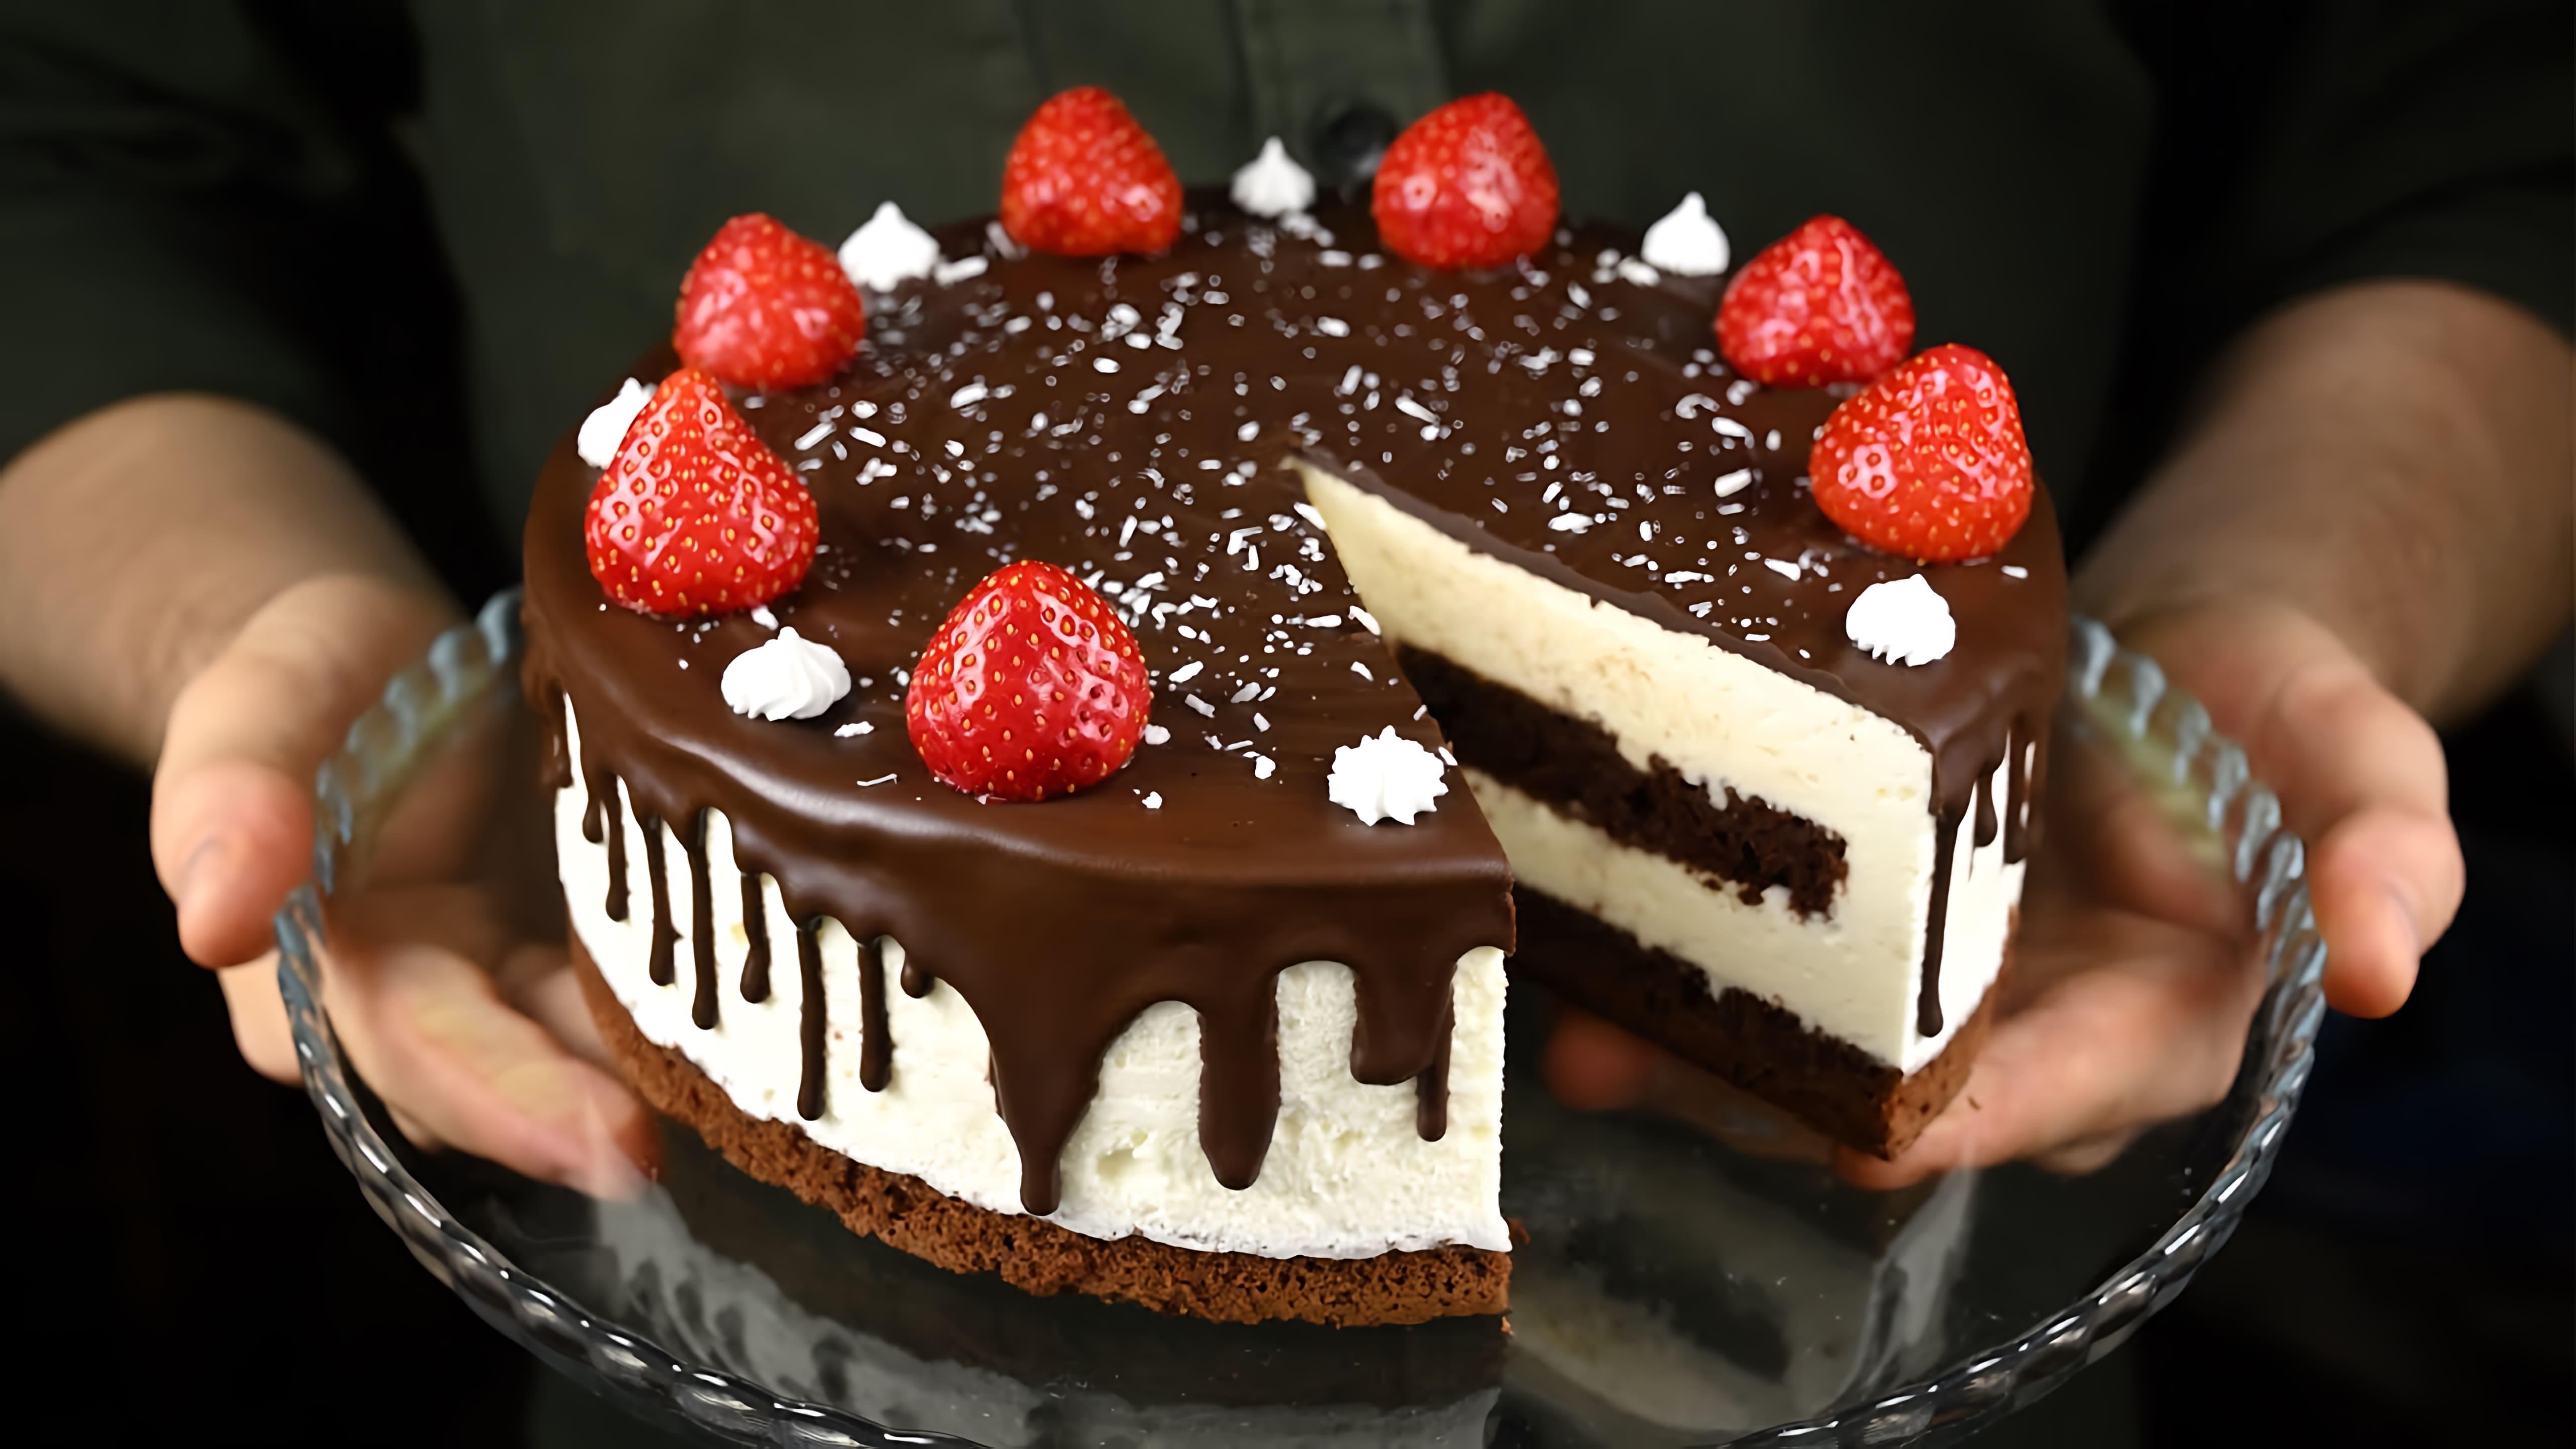 Видео рецепт торта "Птичье молоко", который представляет собой слоеный шоколадный бисквит, наполненный кремовым муссом и покрытый шоколадной глазурью